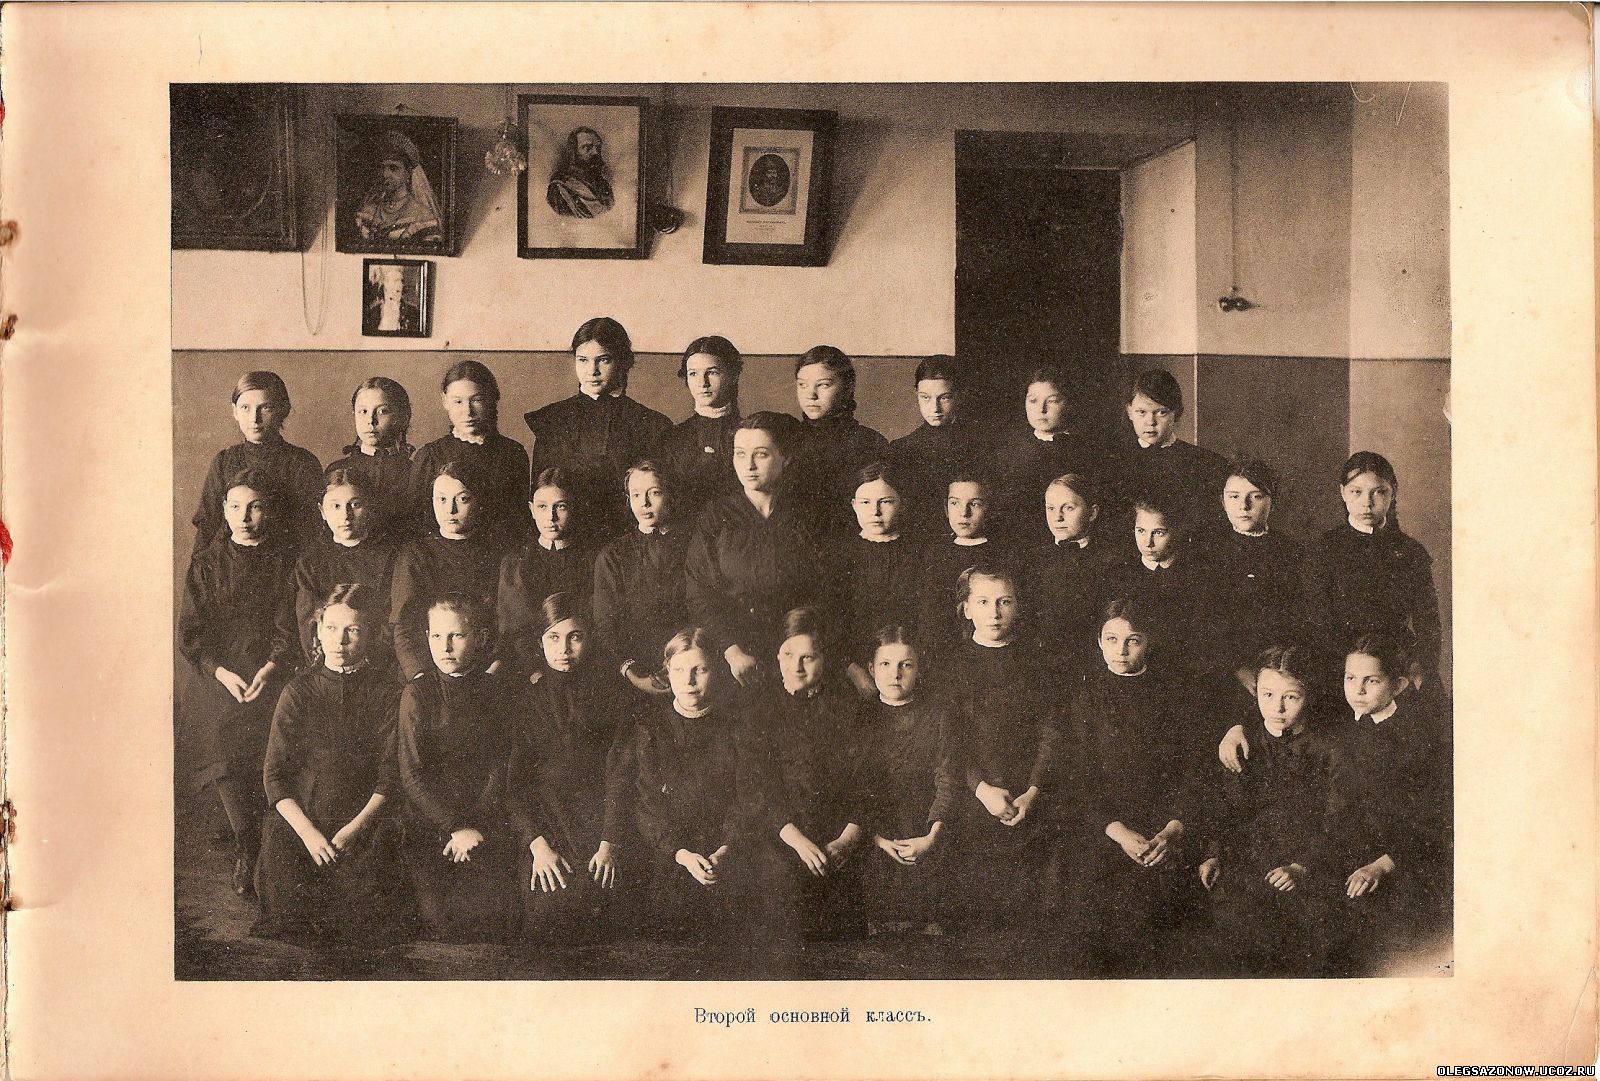 Сайт женской гимназии. Киевская женская гимназия 1913 г. Стоюнина частная женская гимназия. Дмитриевская женская гимназия. Частная женская гимназия Курск.